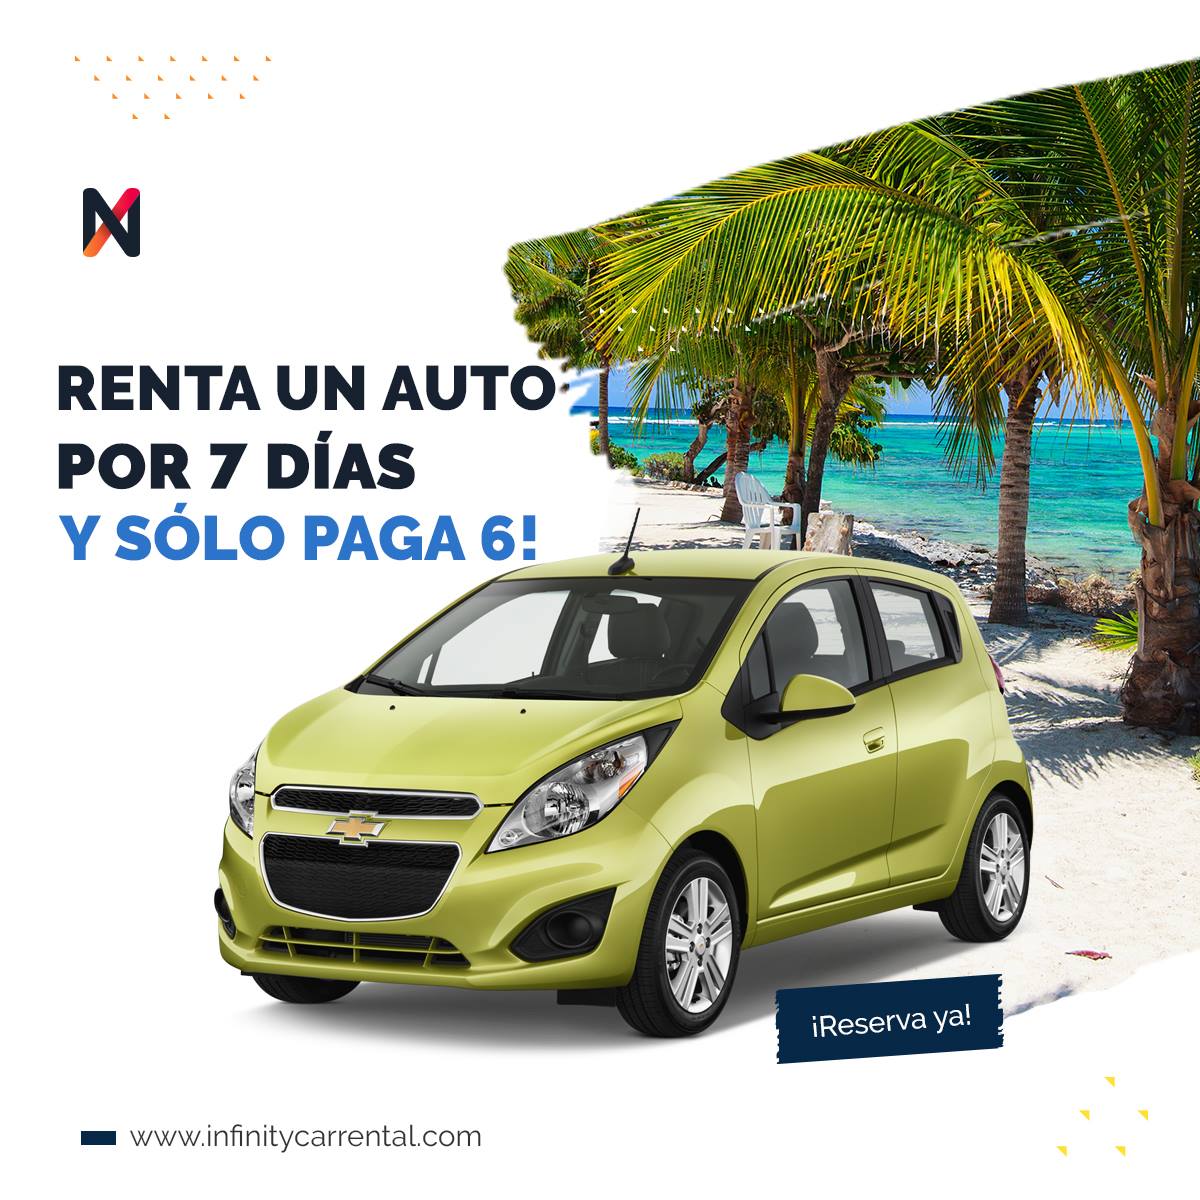 rent a car in cancun